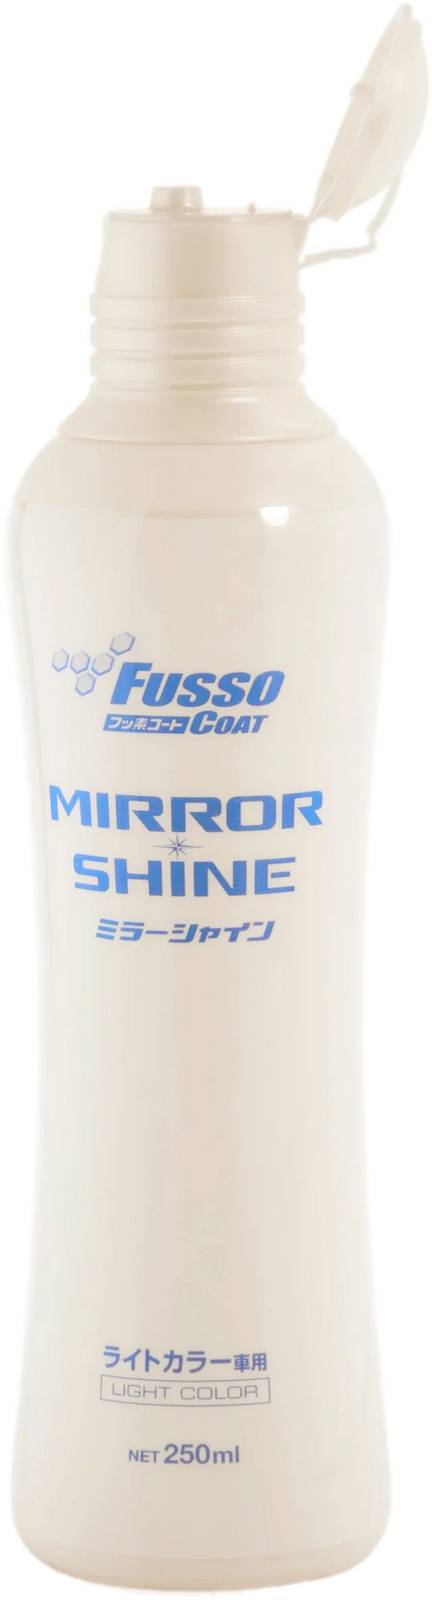 Полироль для кузова для усиления блеска Soft99 Fusso Mirror Shine 9 Month для светлых